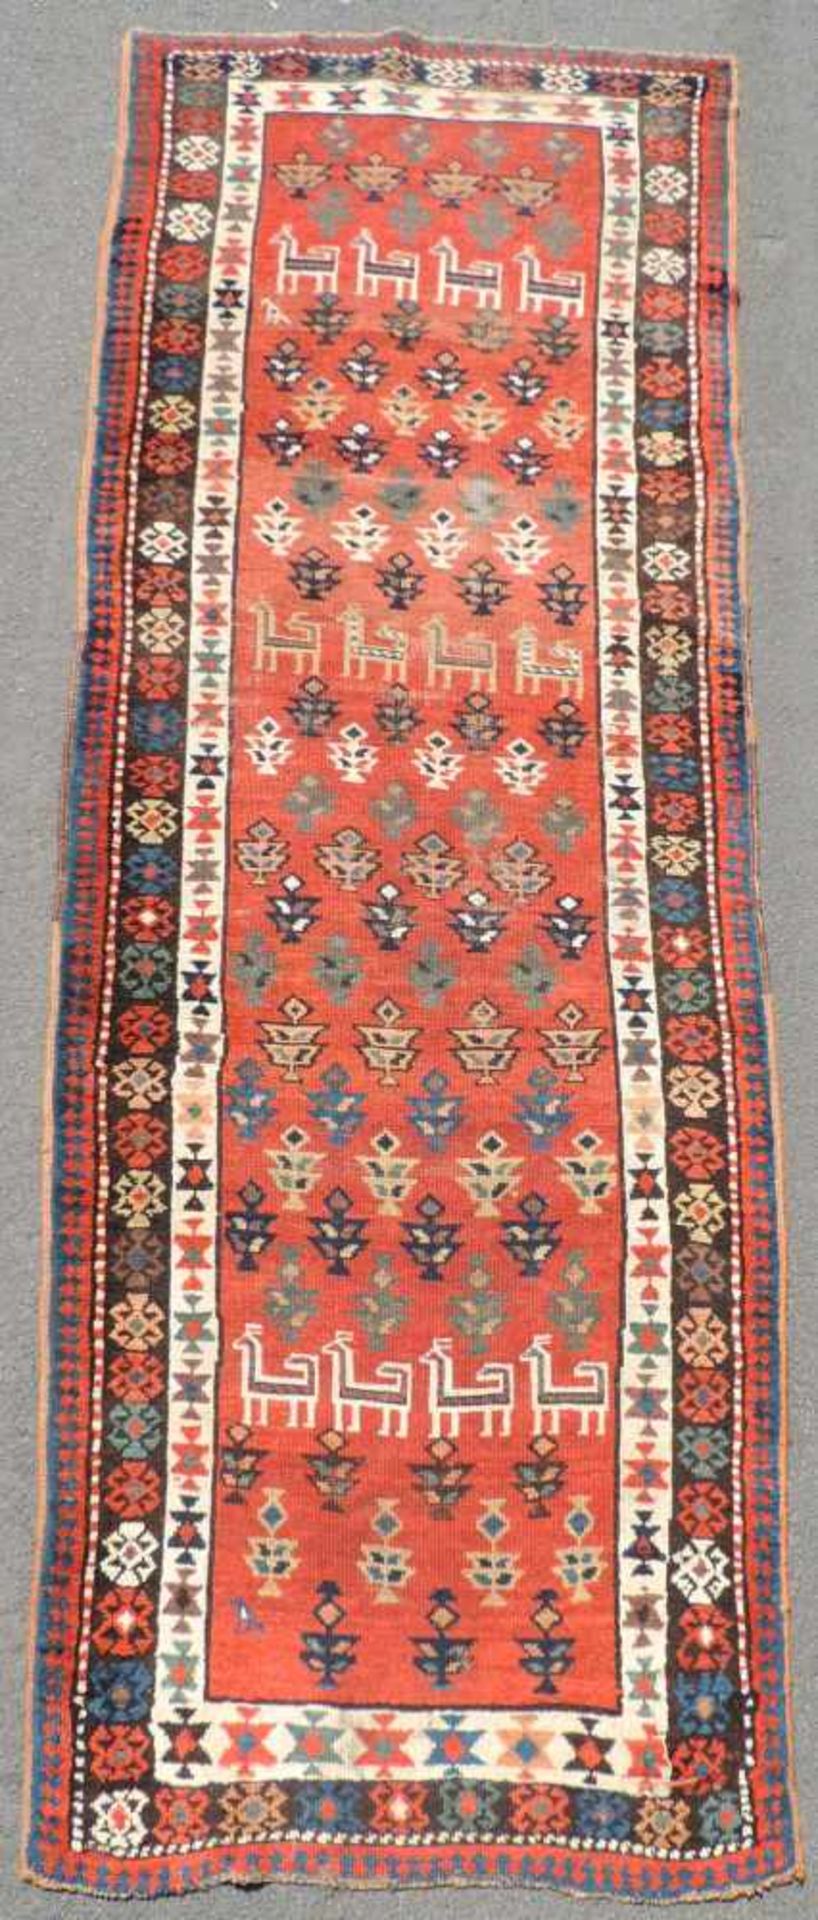 Shah-Savan Galerie. Dorfteppich, Kaukasus. Antik, um 1890. 334 cm x 112 cm. Handgeknüpft. Wolle